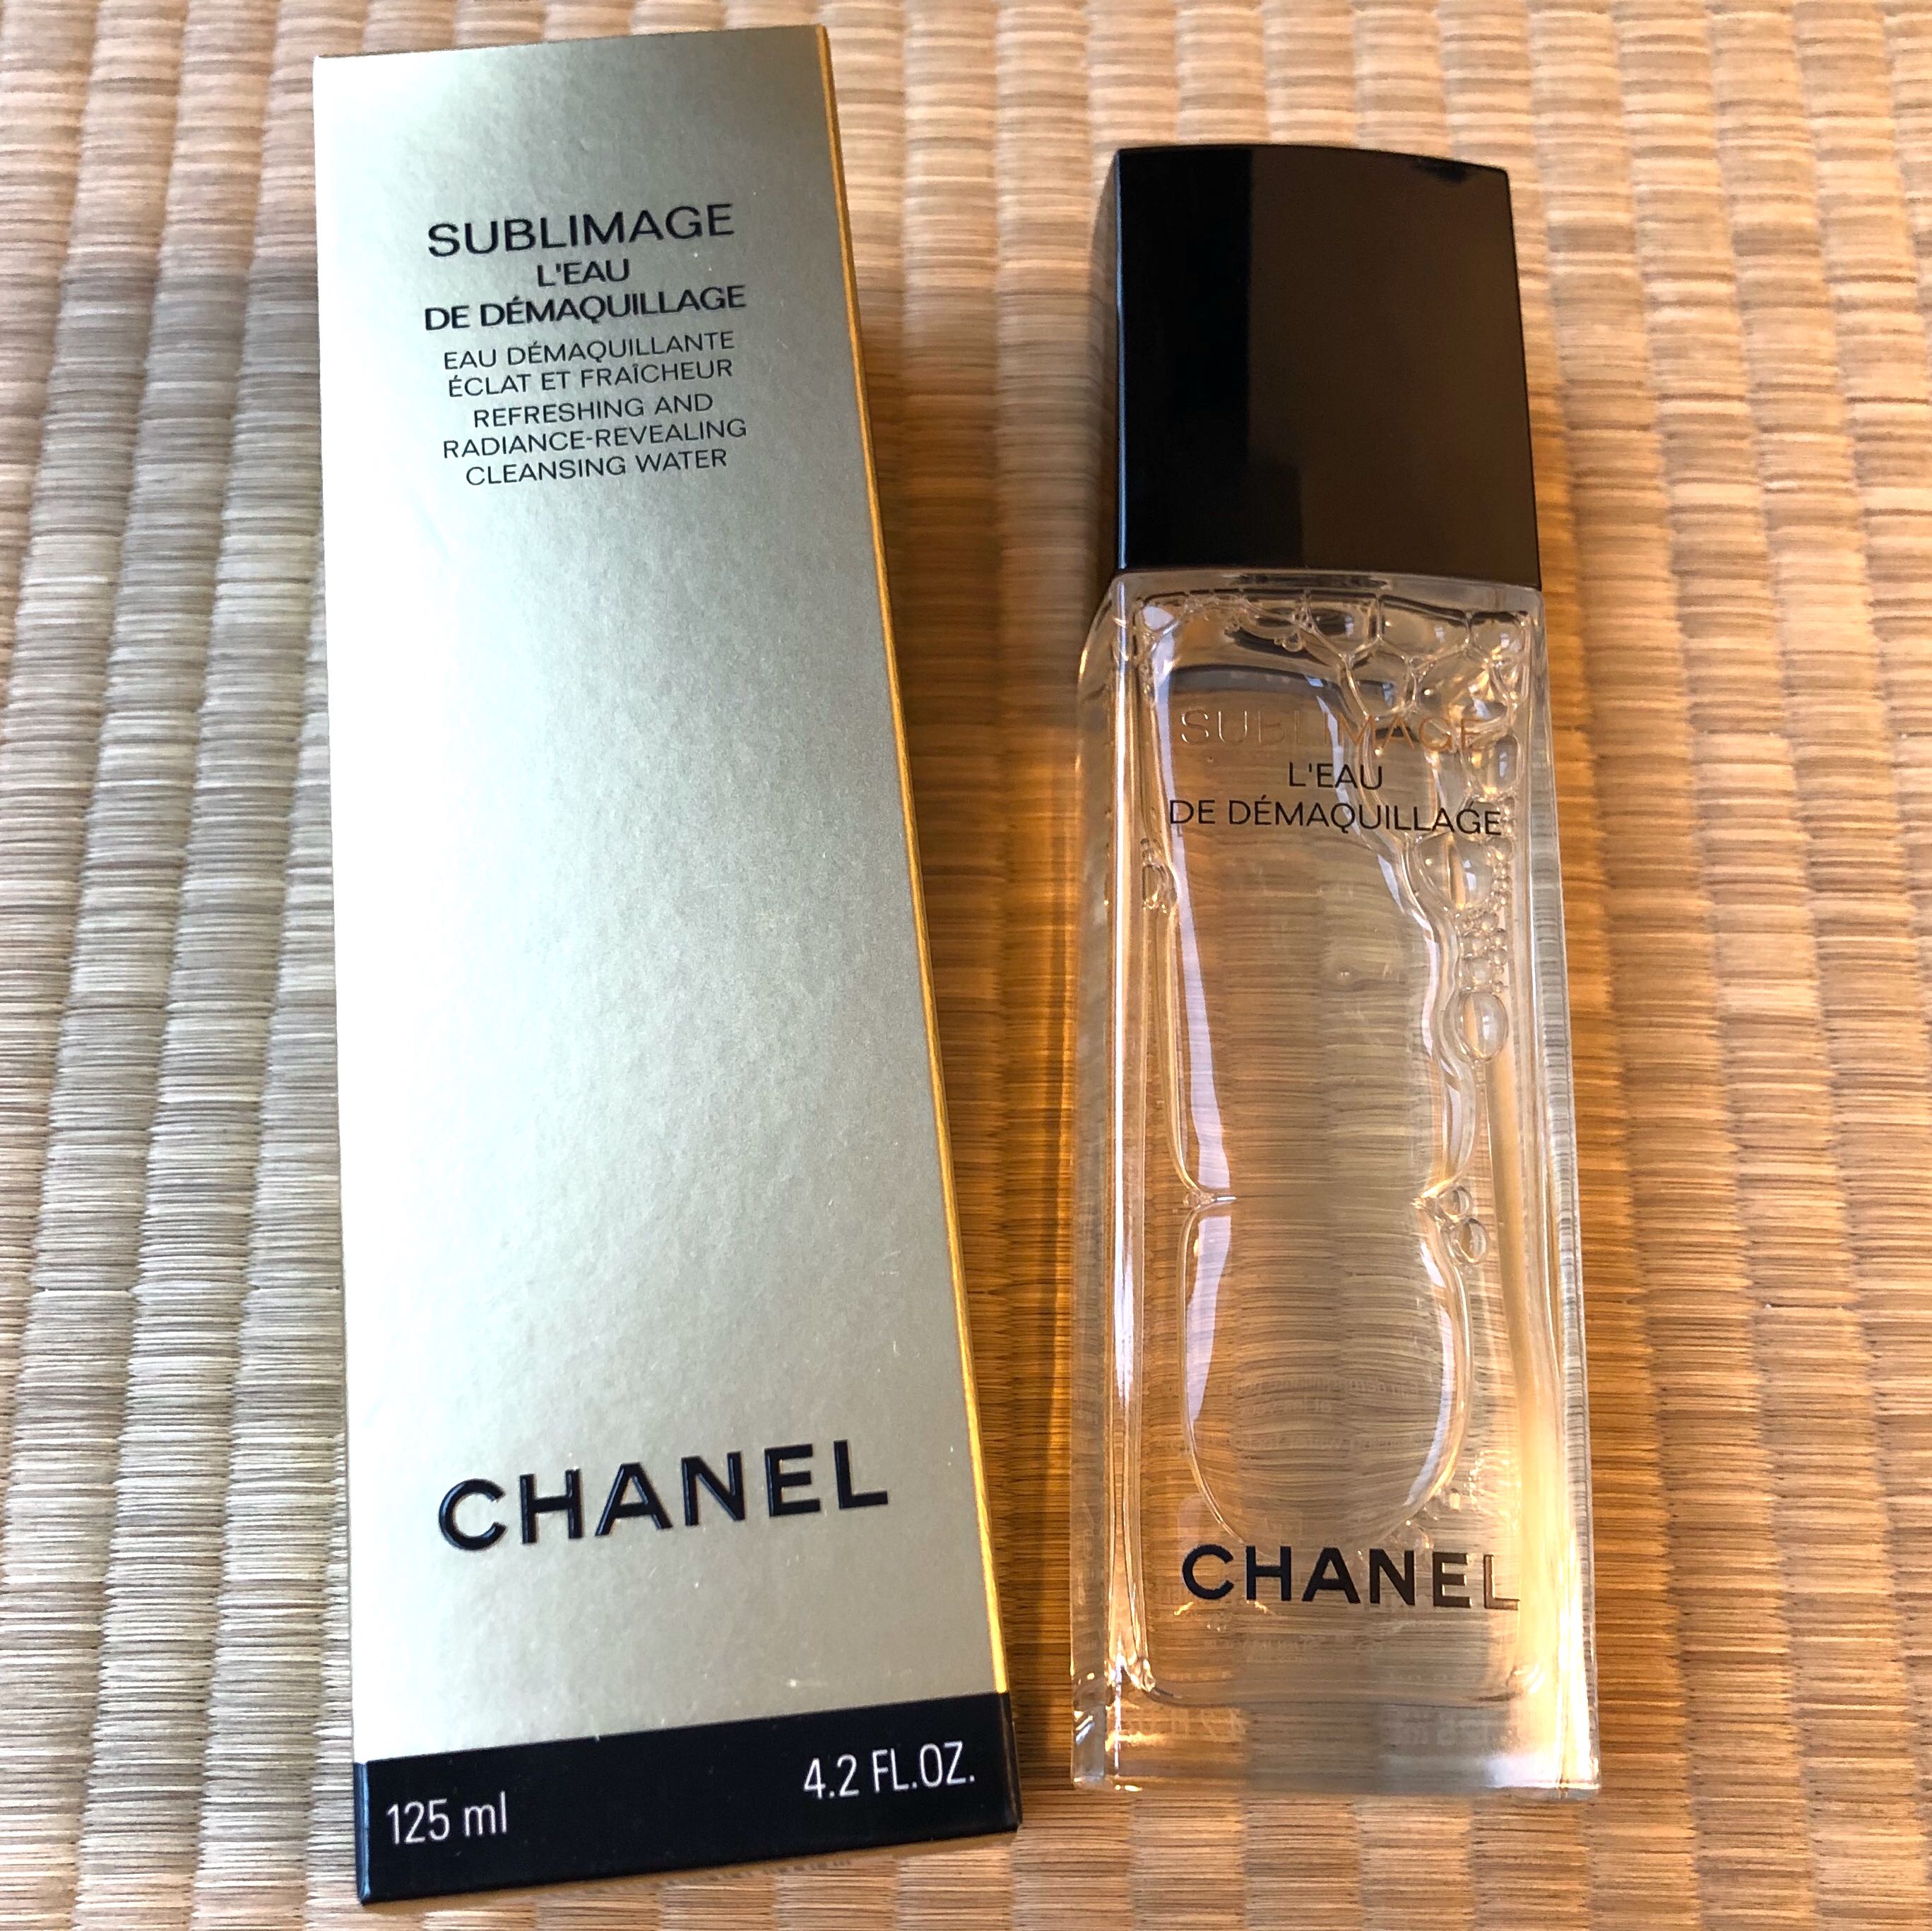 Chanel+Sublimage+L%27eau+de+Demaquillage+Cleansing+Water+10ml+Travel+Size  for sale online